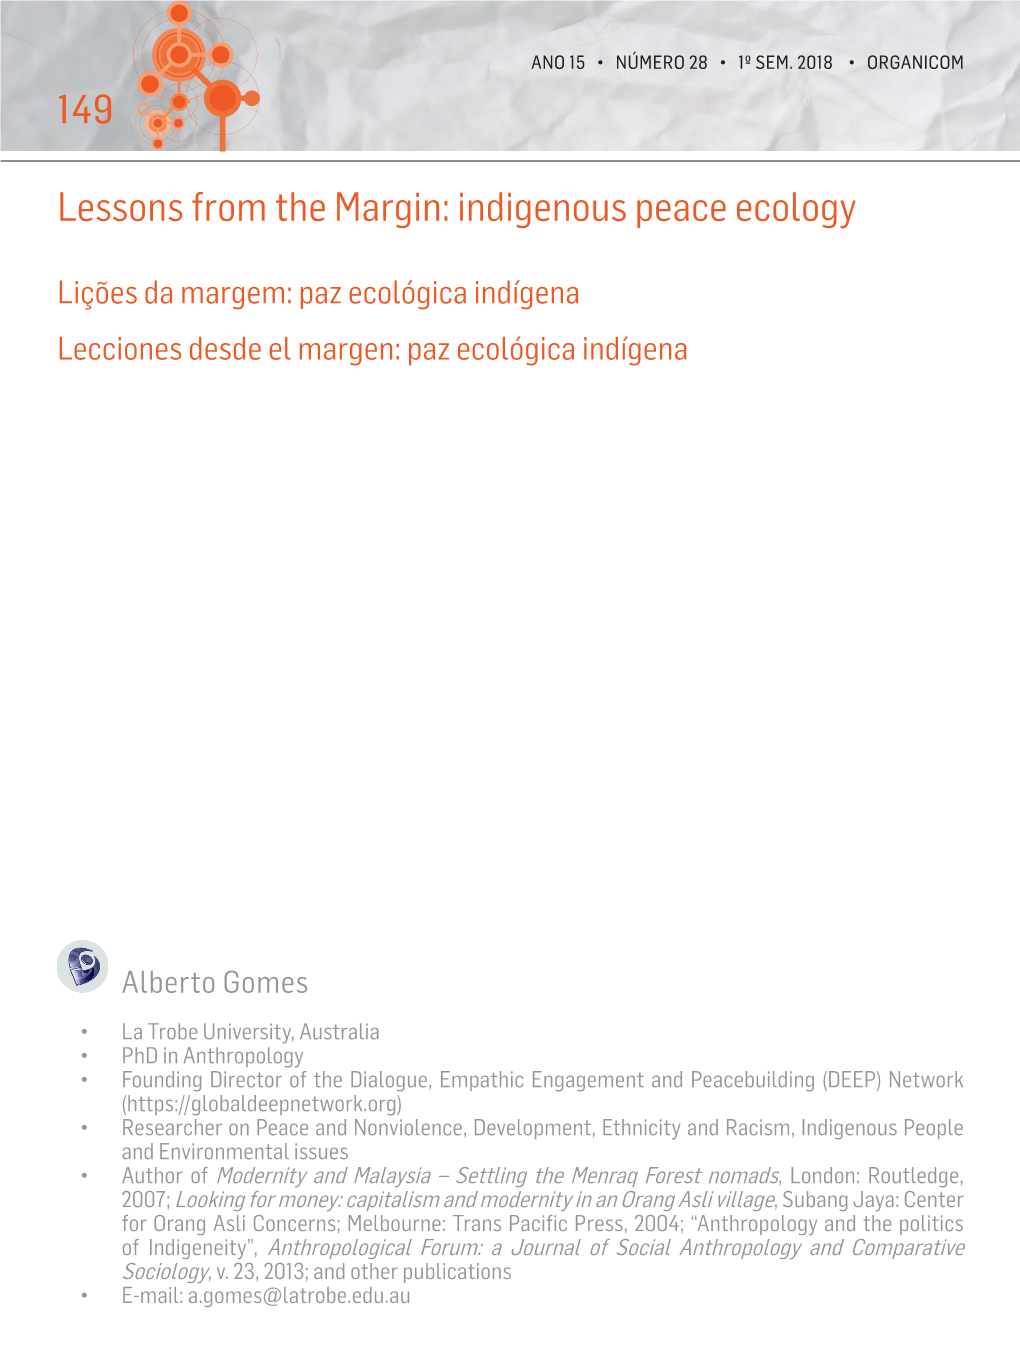 Indigenous Peace Ecology